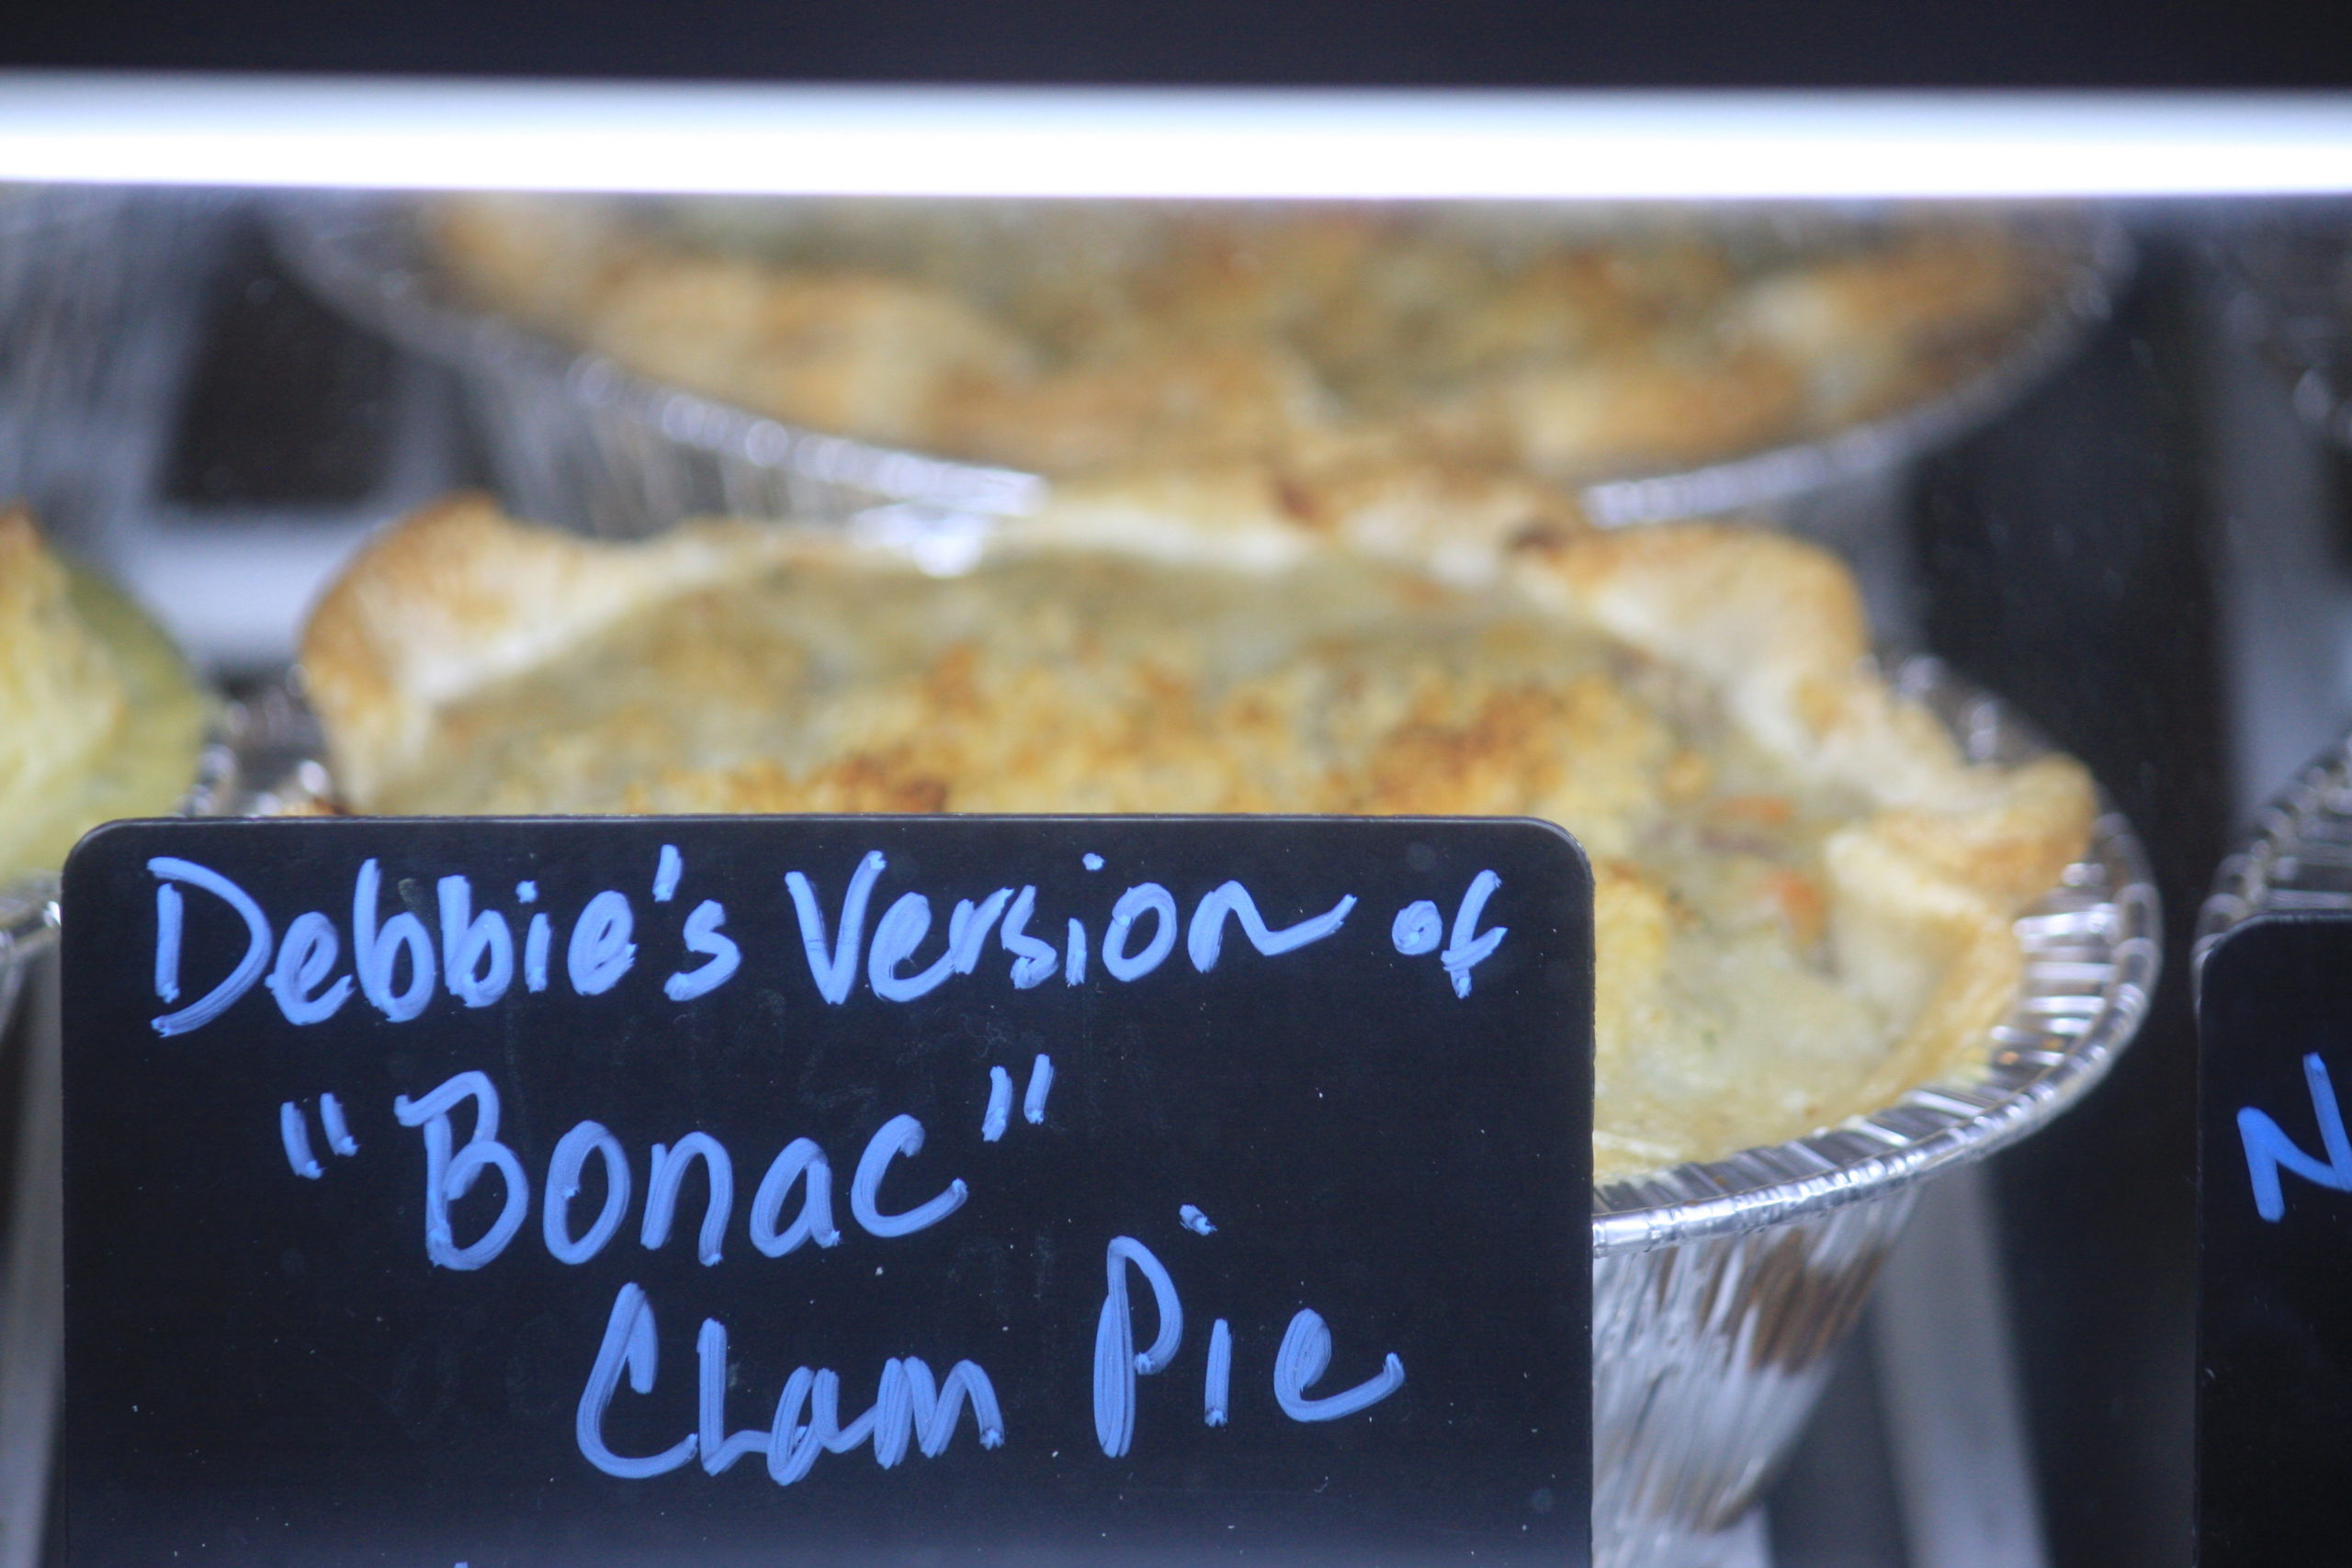 Debbie Geppert's Bonac clam pie.